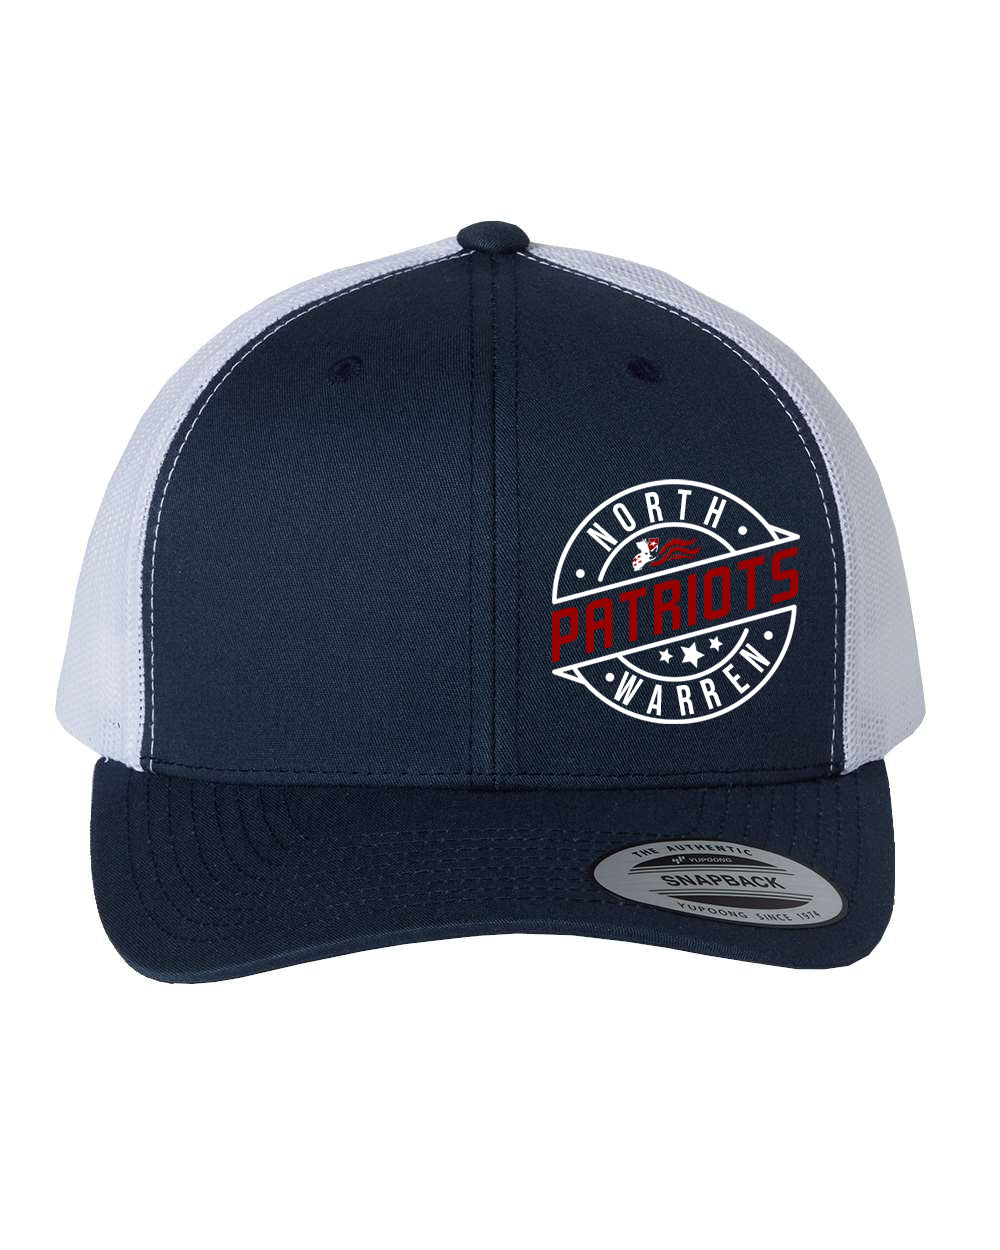 North Warren Design 1 Trucker Hat